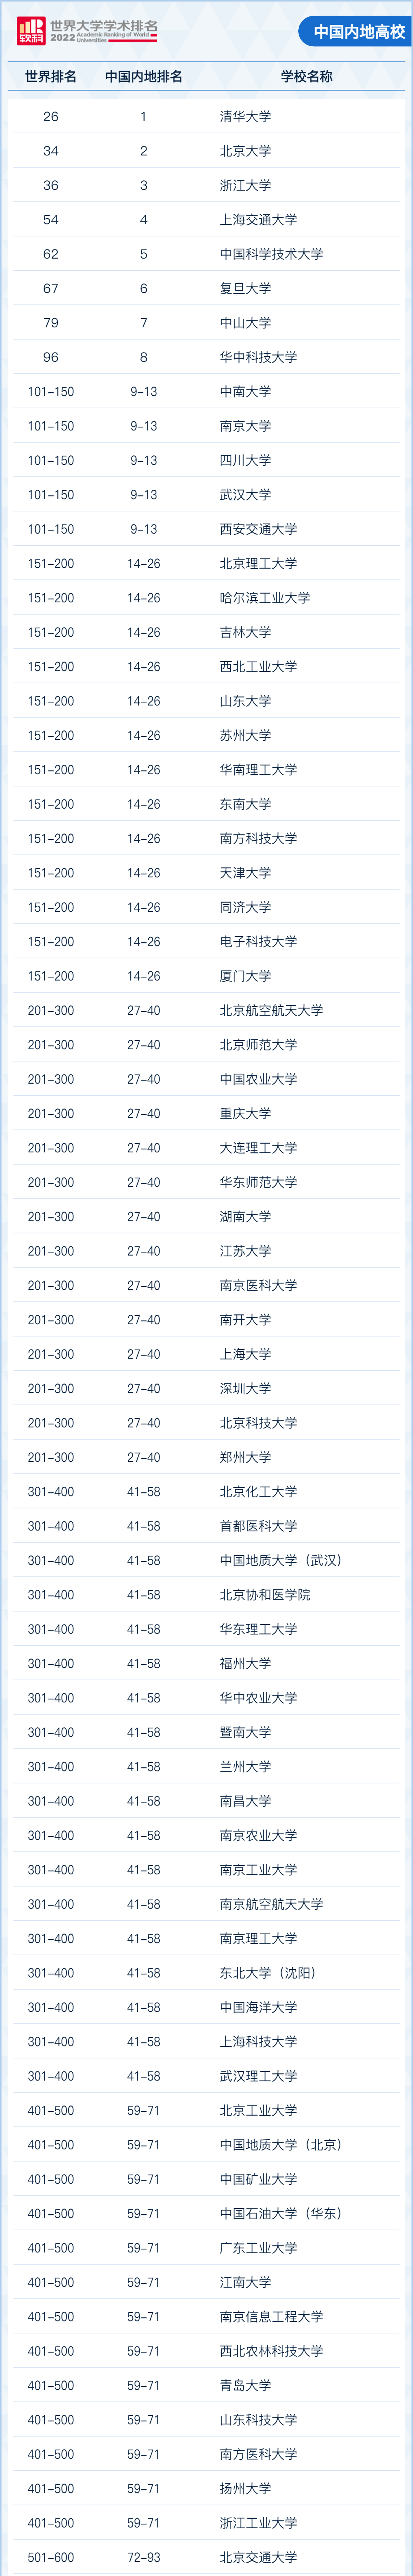 2022软科世界大学学术排名发布中国内地高校.jpg